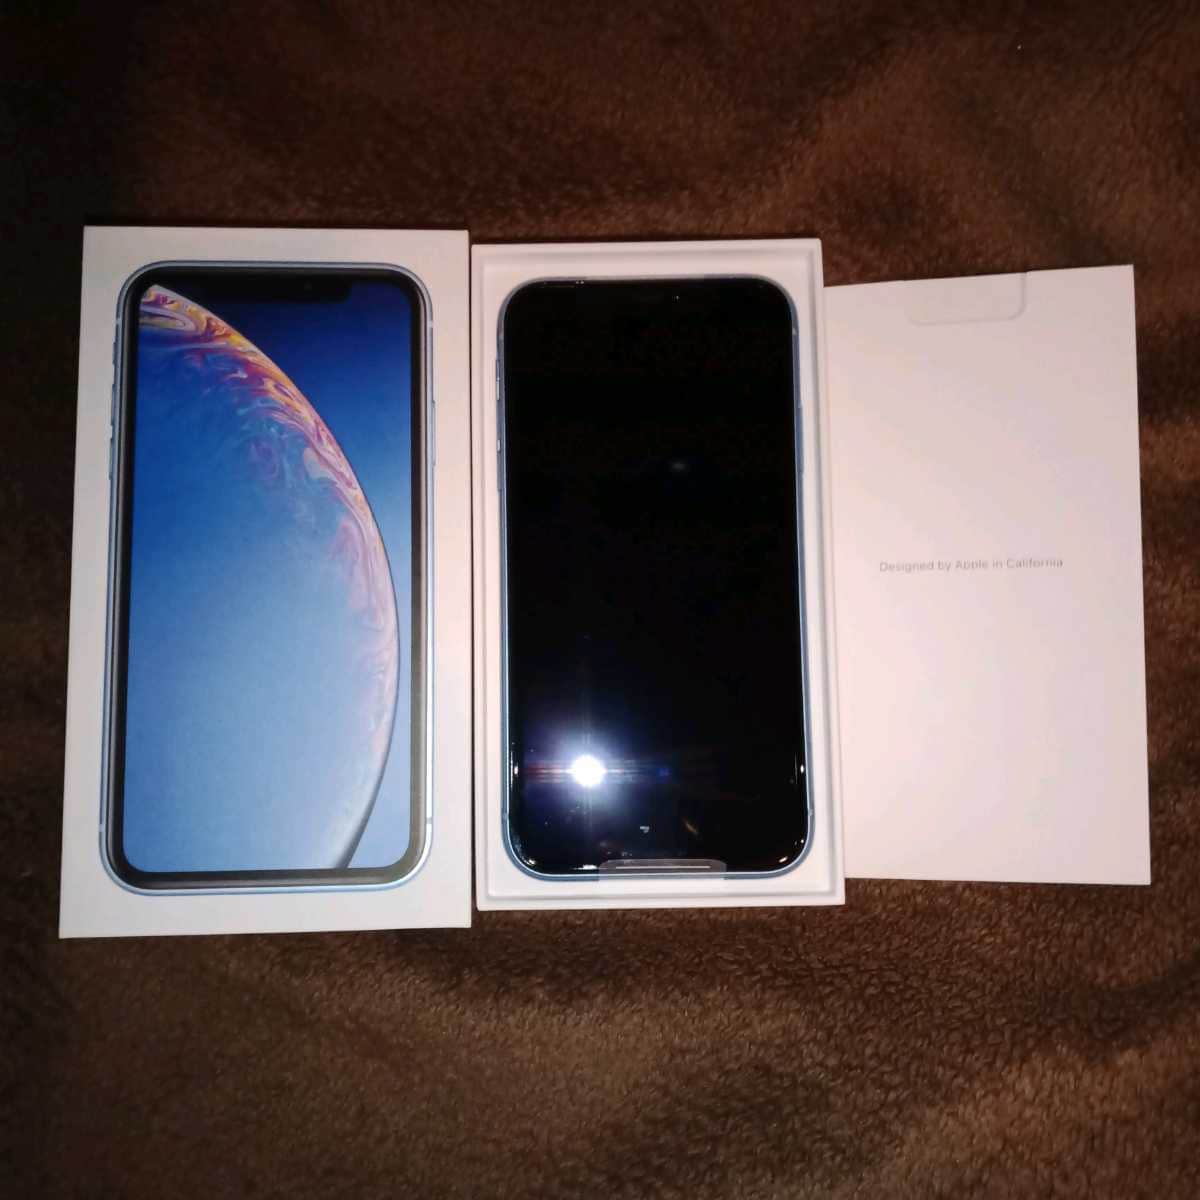 New] SIM-free iPhoneXR 128GB blue blue SIM-Free Apple iPhone XR 